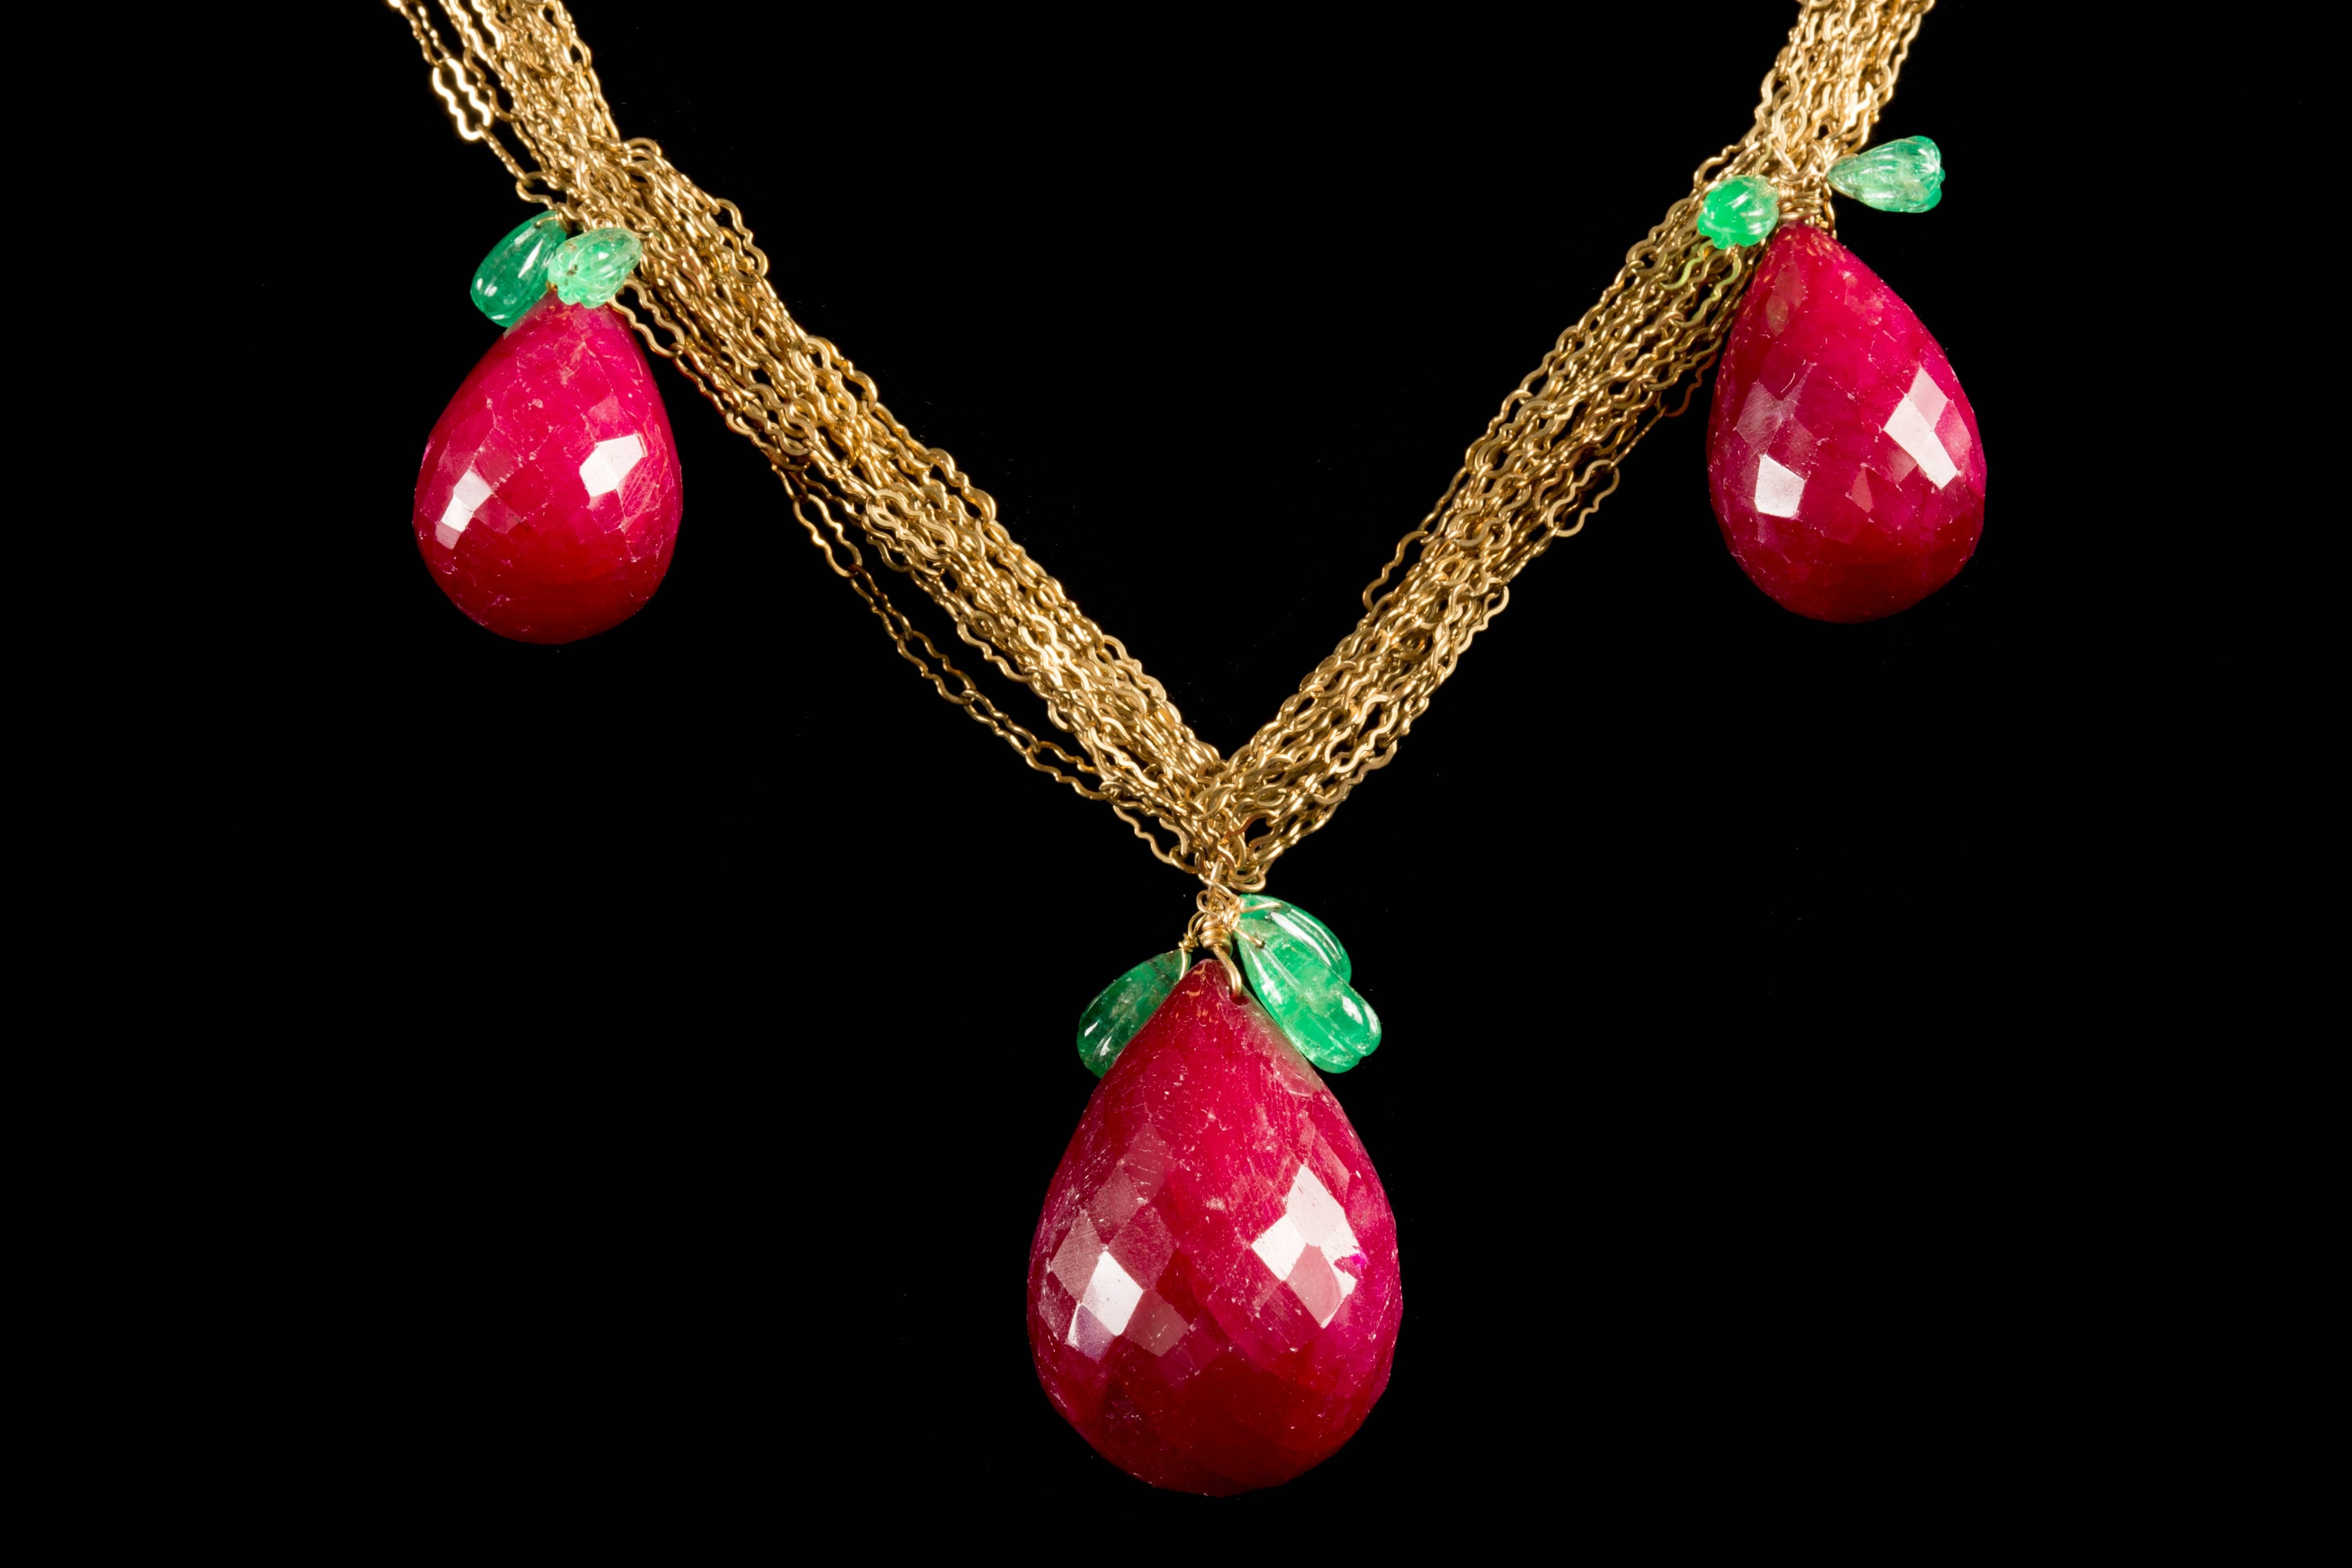 Magnifique collier de rubis en poire composé de 3 rubis en briolette, chacun avec des feuilles d'émeraude imbriquées avec une chaîne en or.